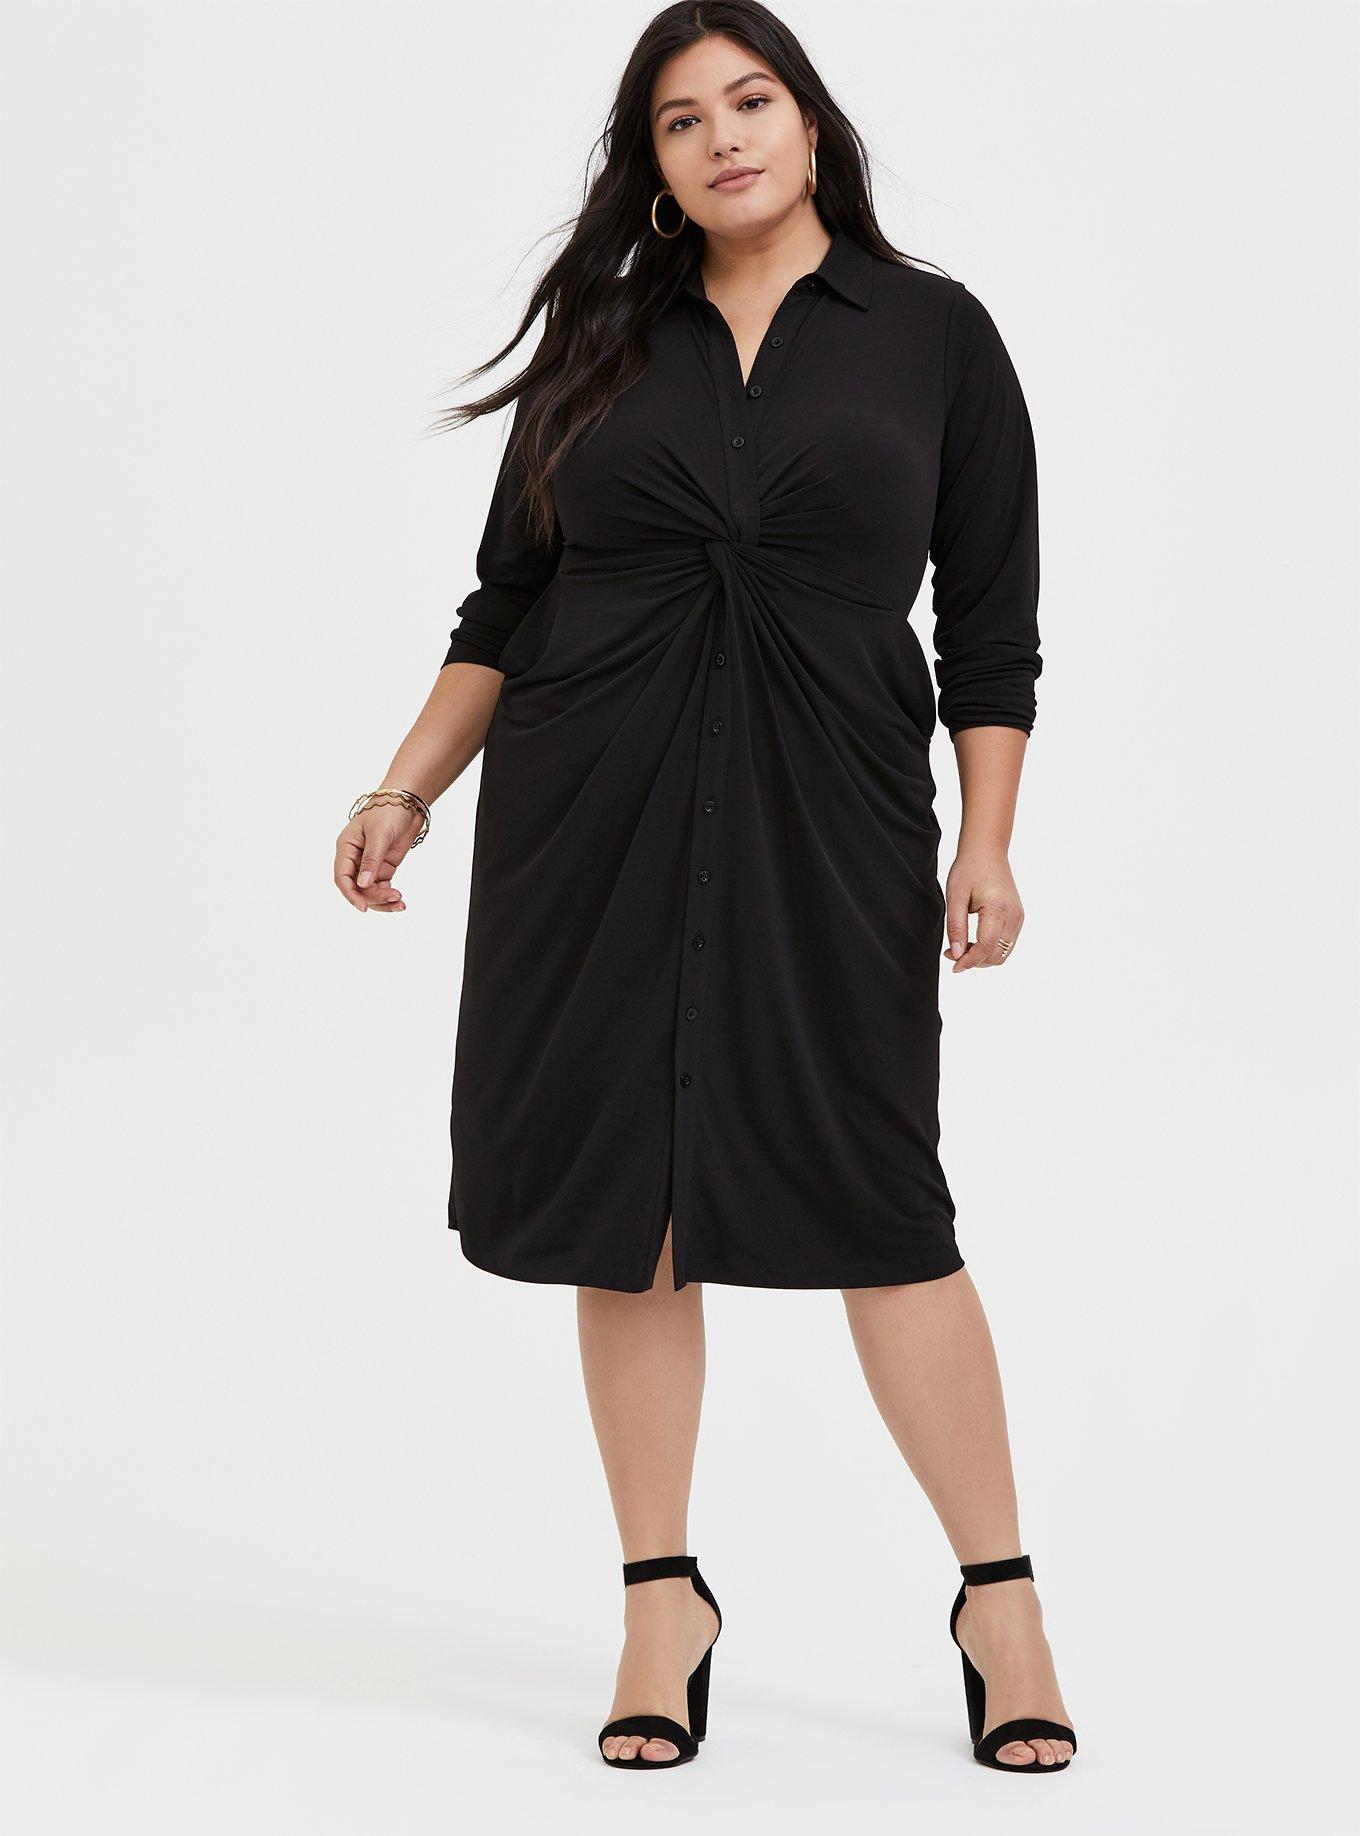 Plus Size - Black Studio Knit Button Front Twist Shirt Dress - Torrid